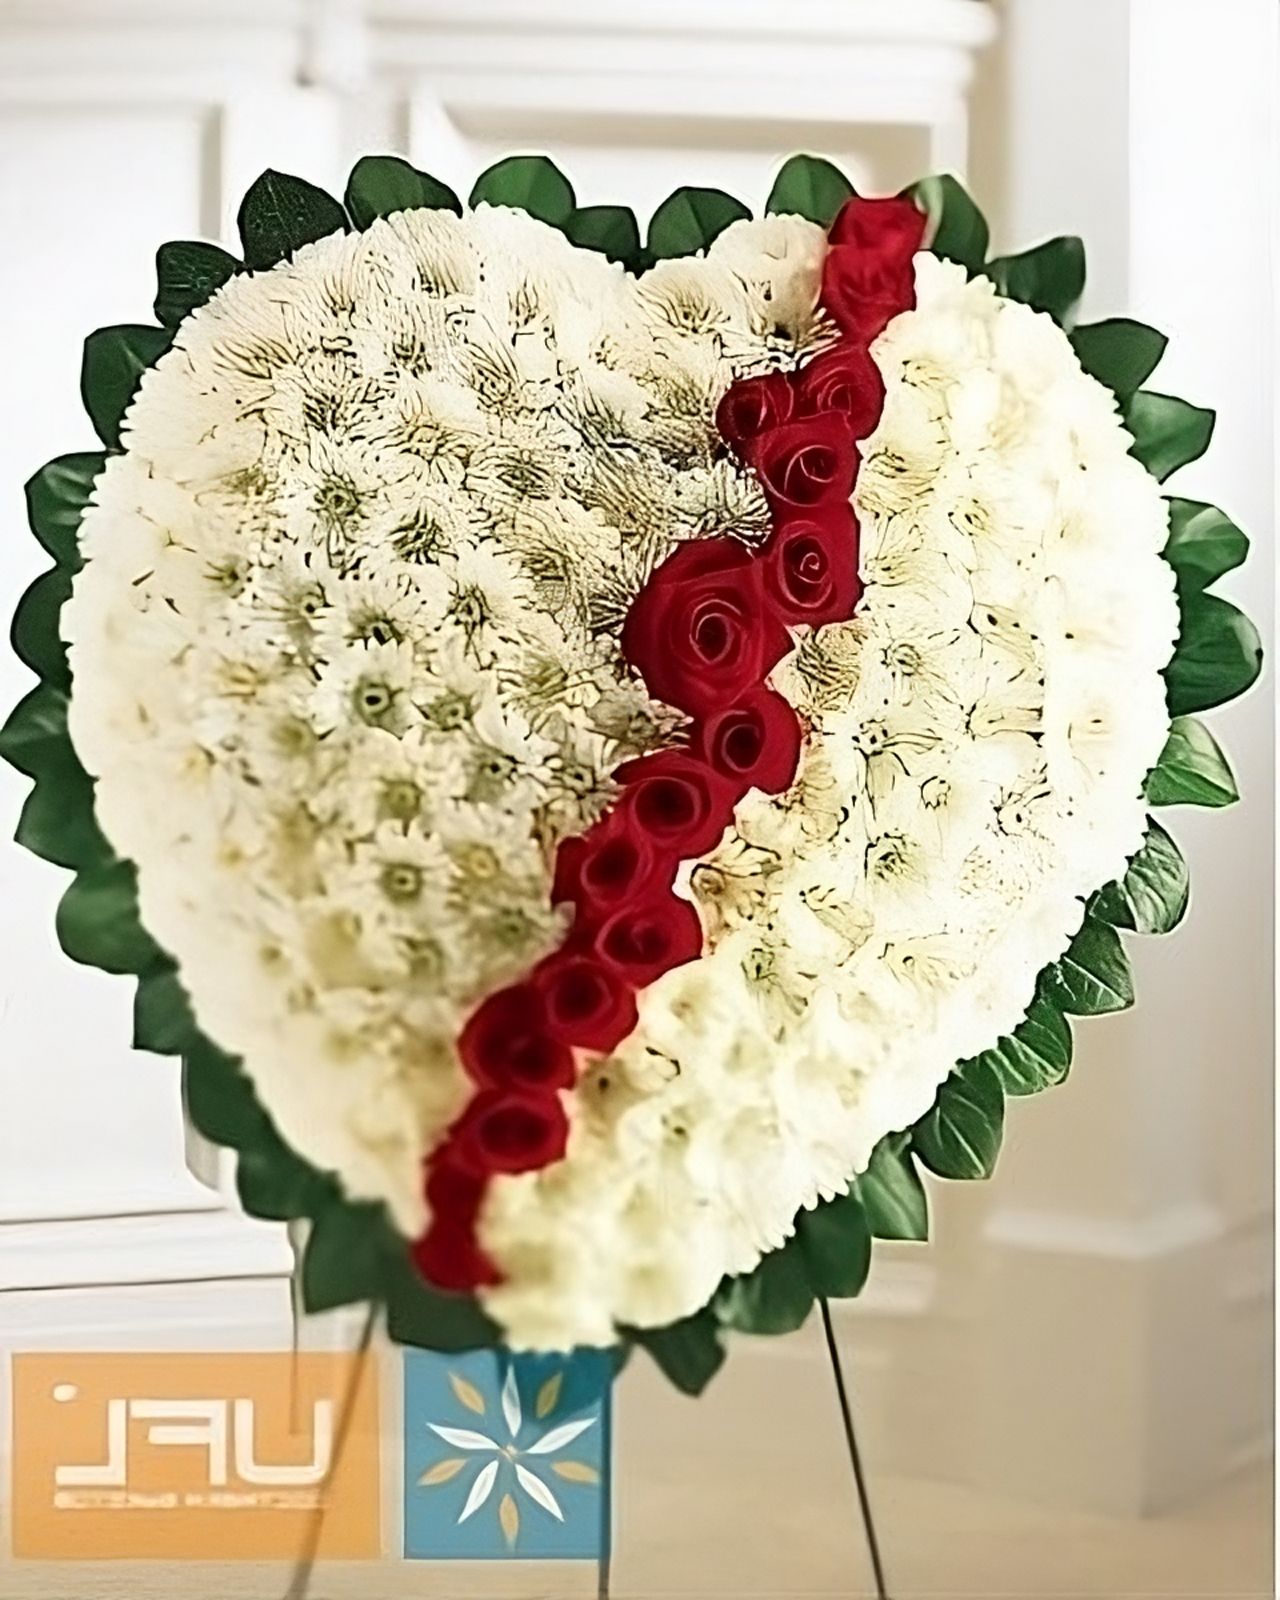 Ritual arrangement of flowers in a heart shape Vishnevoe